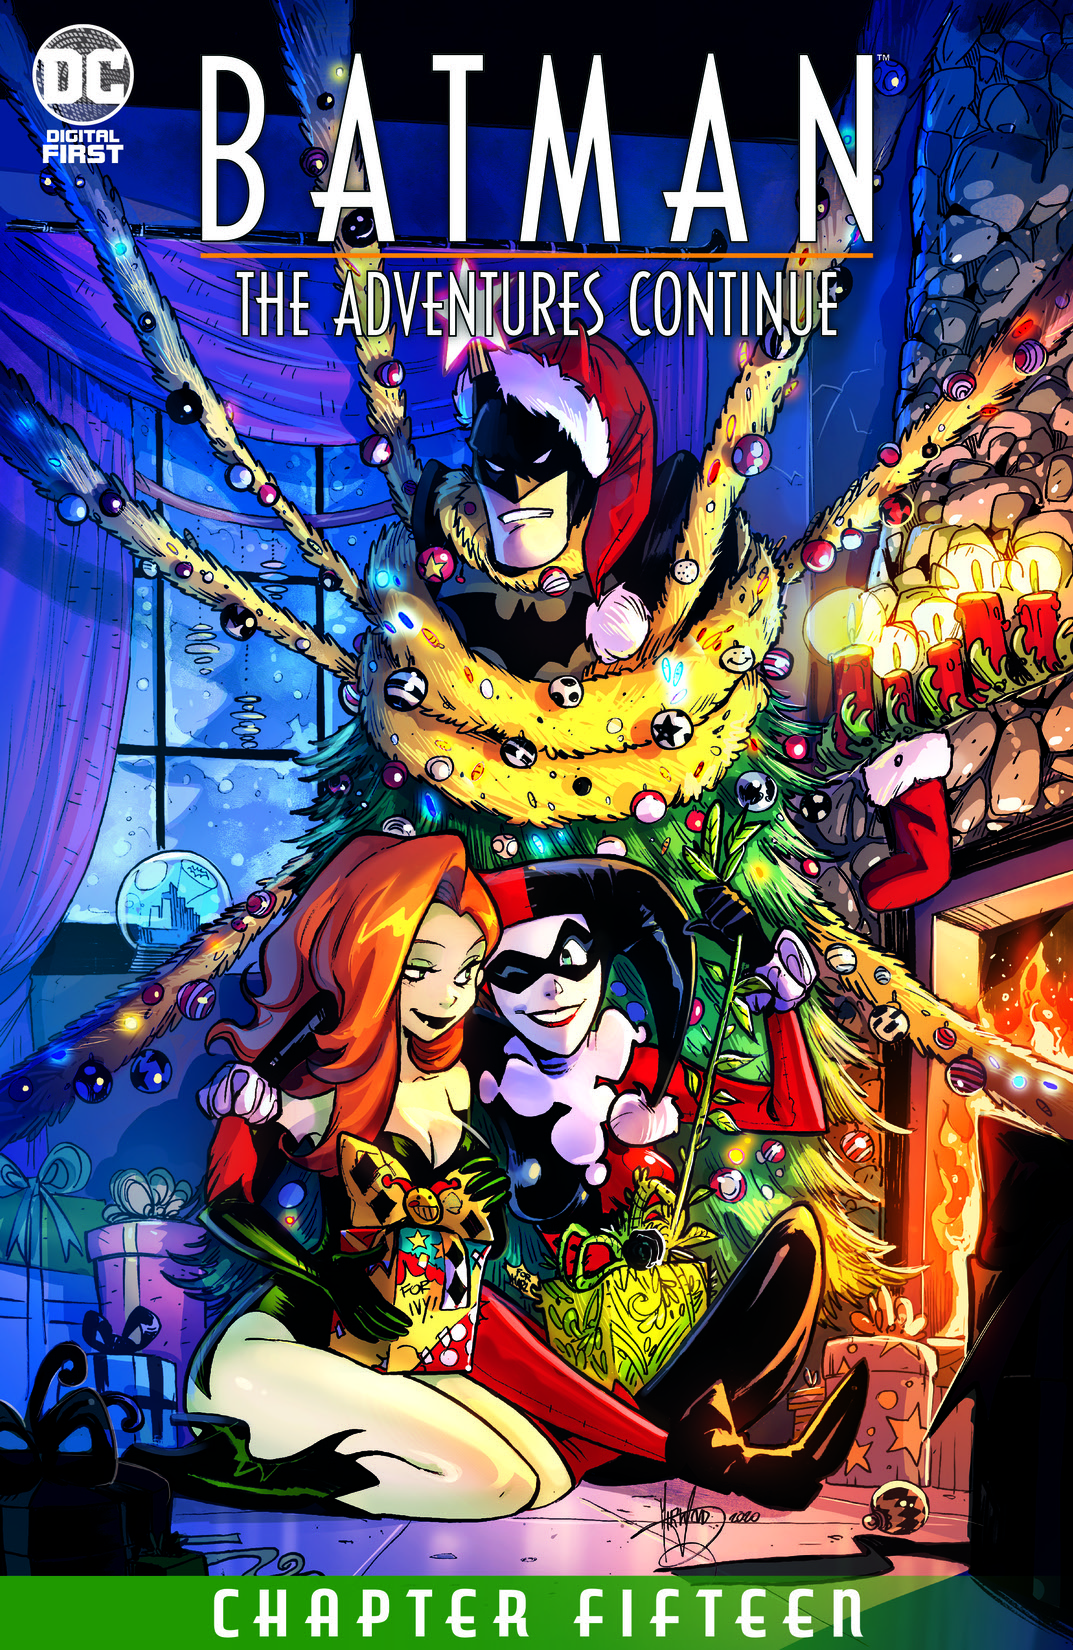 Batman: The Adventures Continue #15 preview images